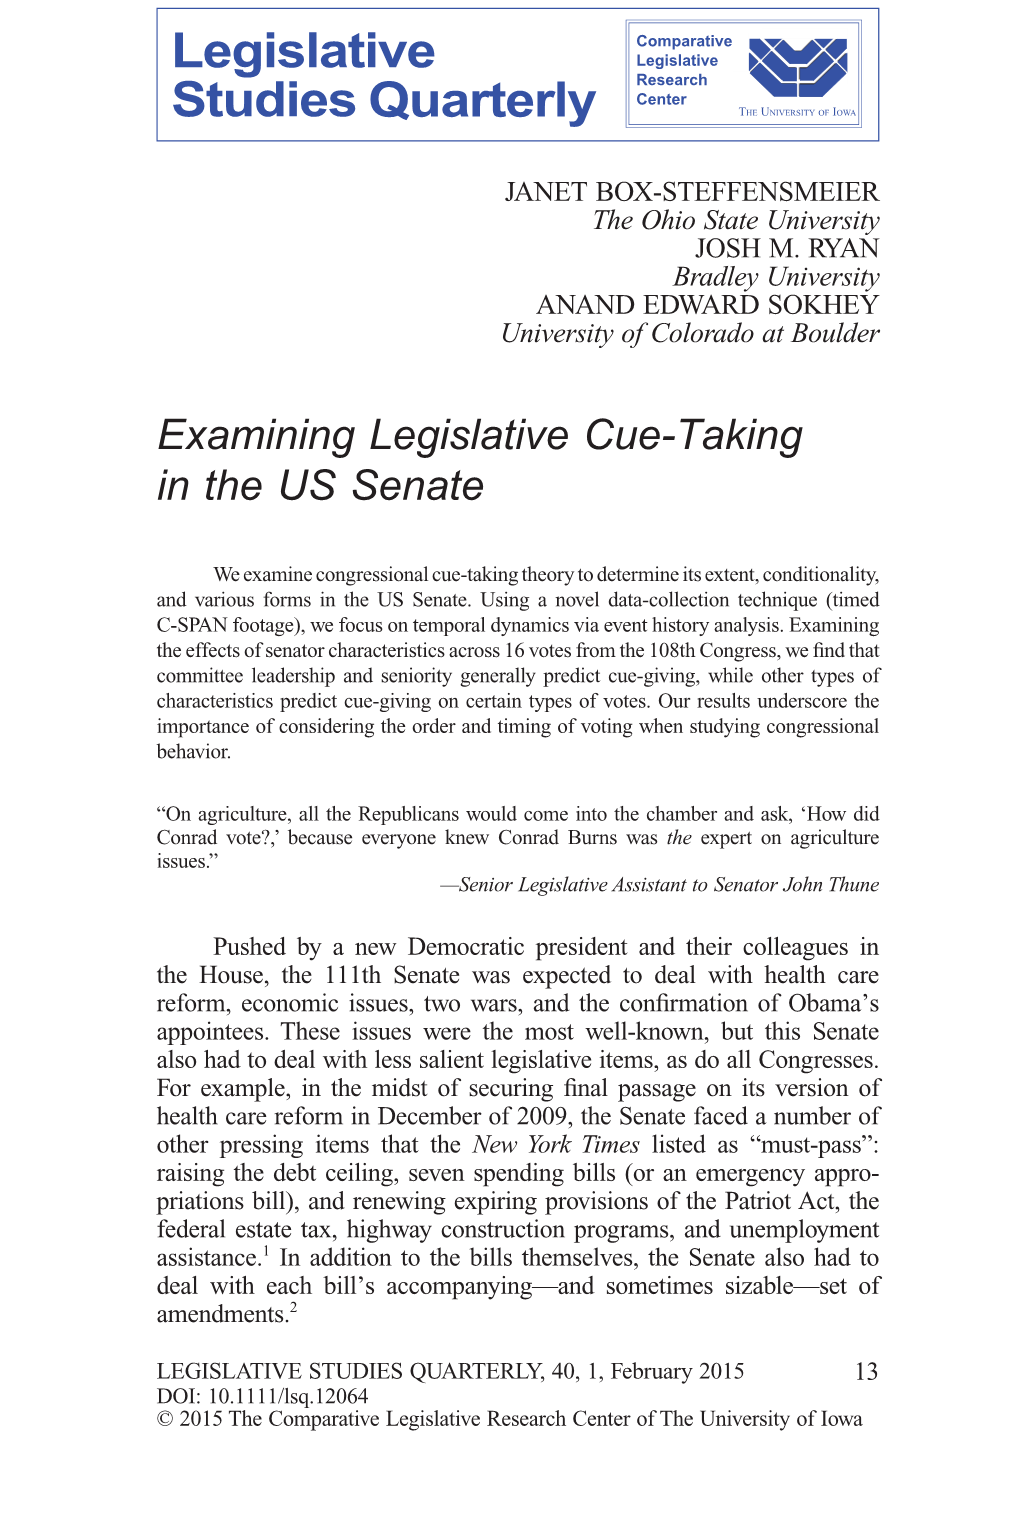 Examining Legislative Cue-Taking in the US Senate